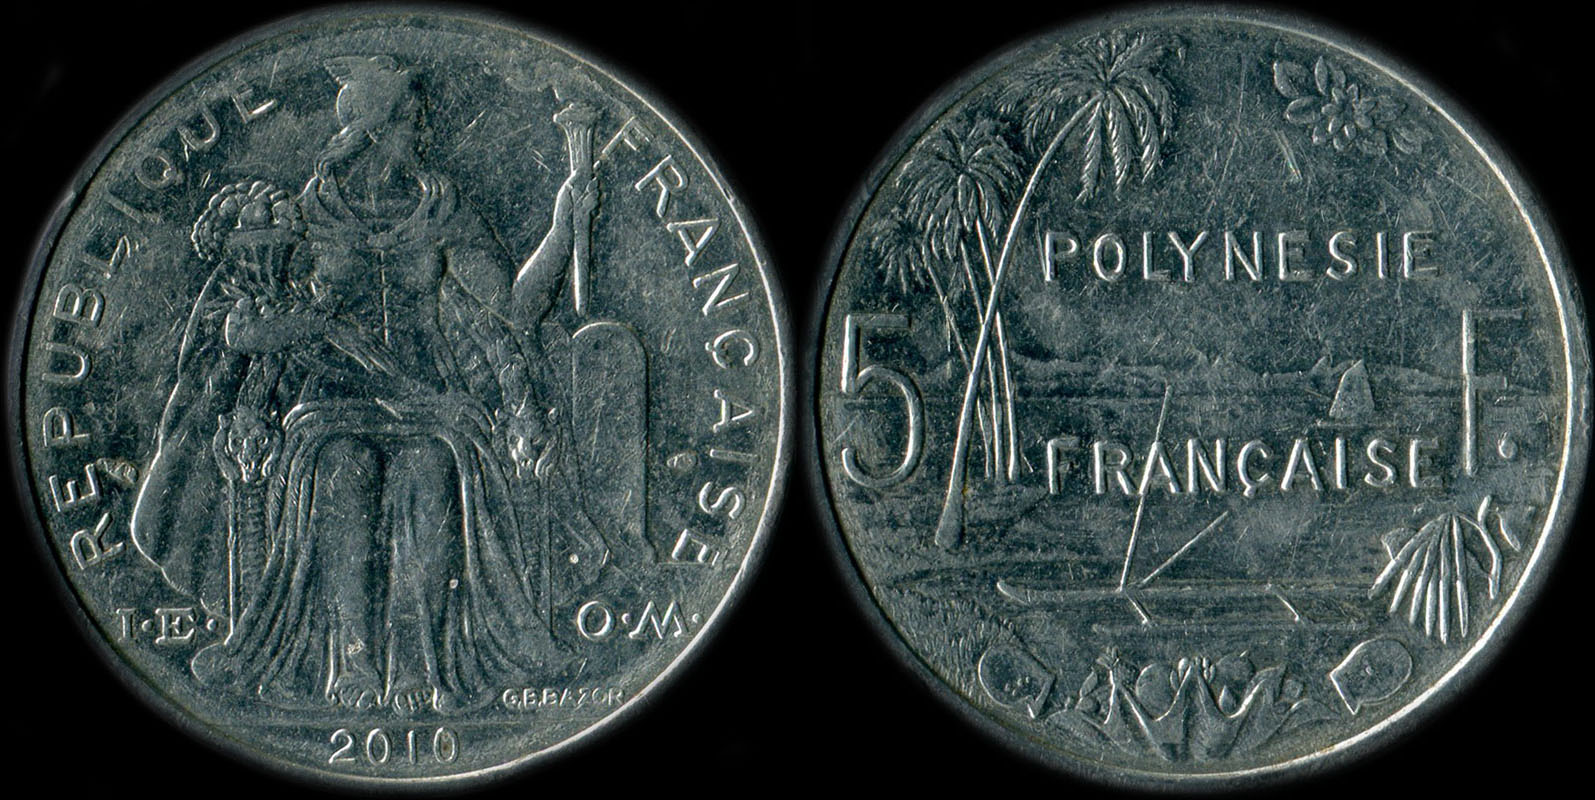 Pice de 5 francs 2010  - I.E.O.M. Polynsie franaise